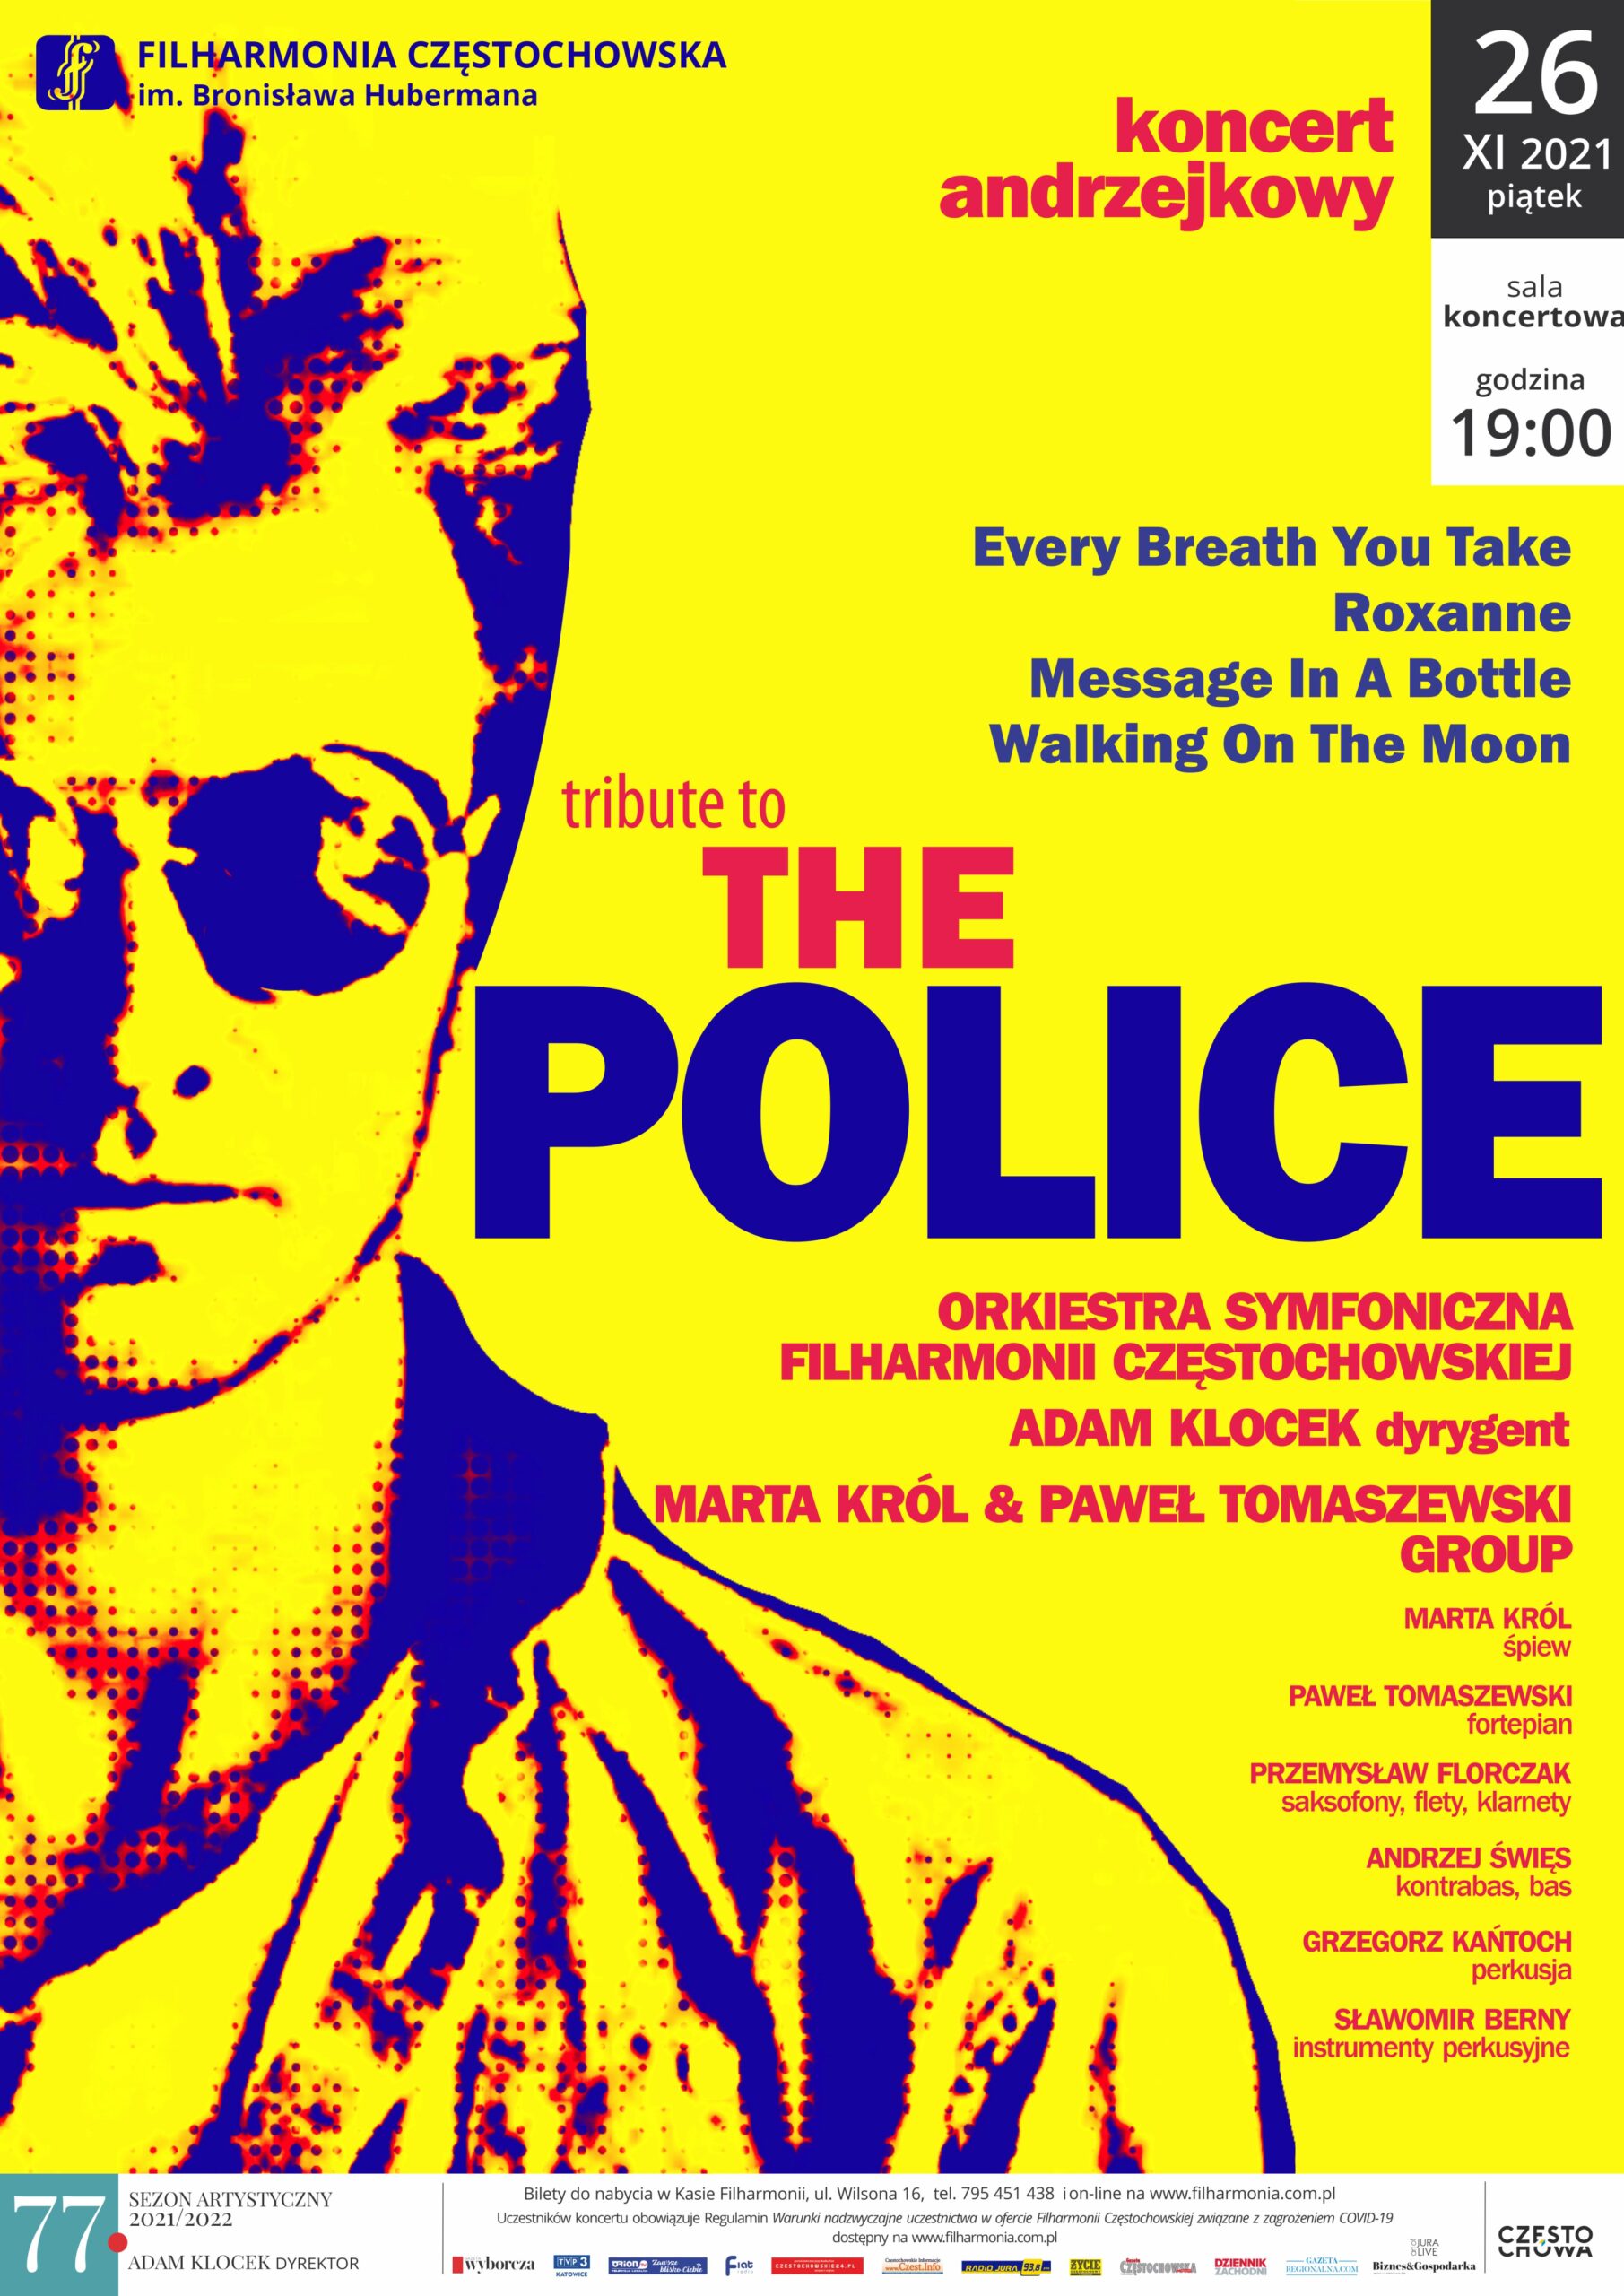 "Tribiute the Police”, czyli andrzejkowa propozycja Filharmonii Częstochowskiej. Będzie przebojowo! 1